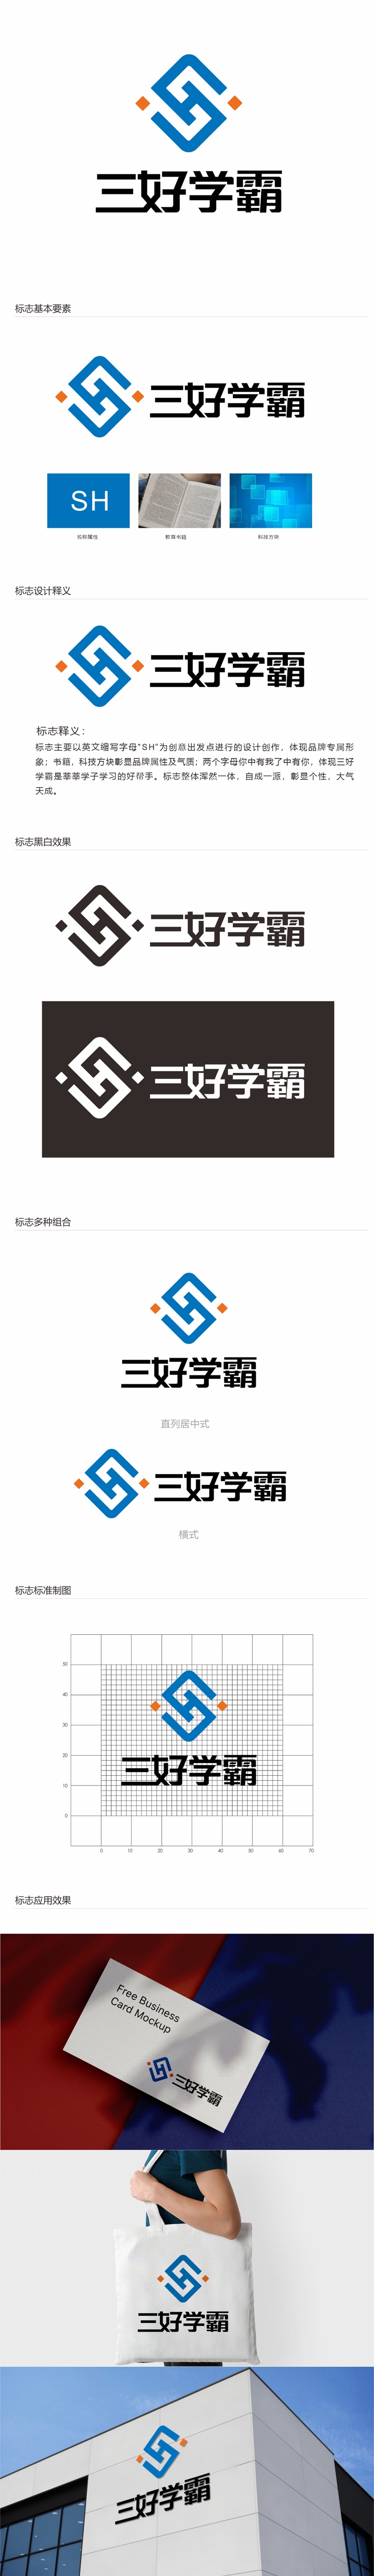 唐国强的三好学霸logo设计